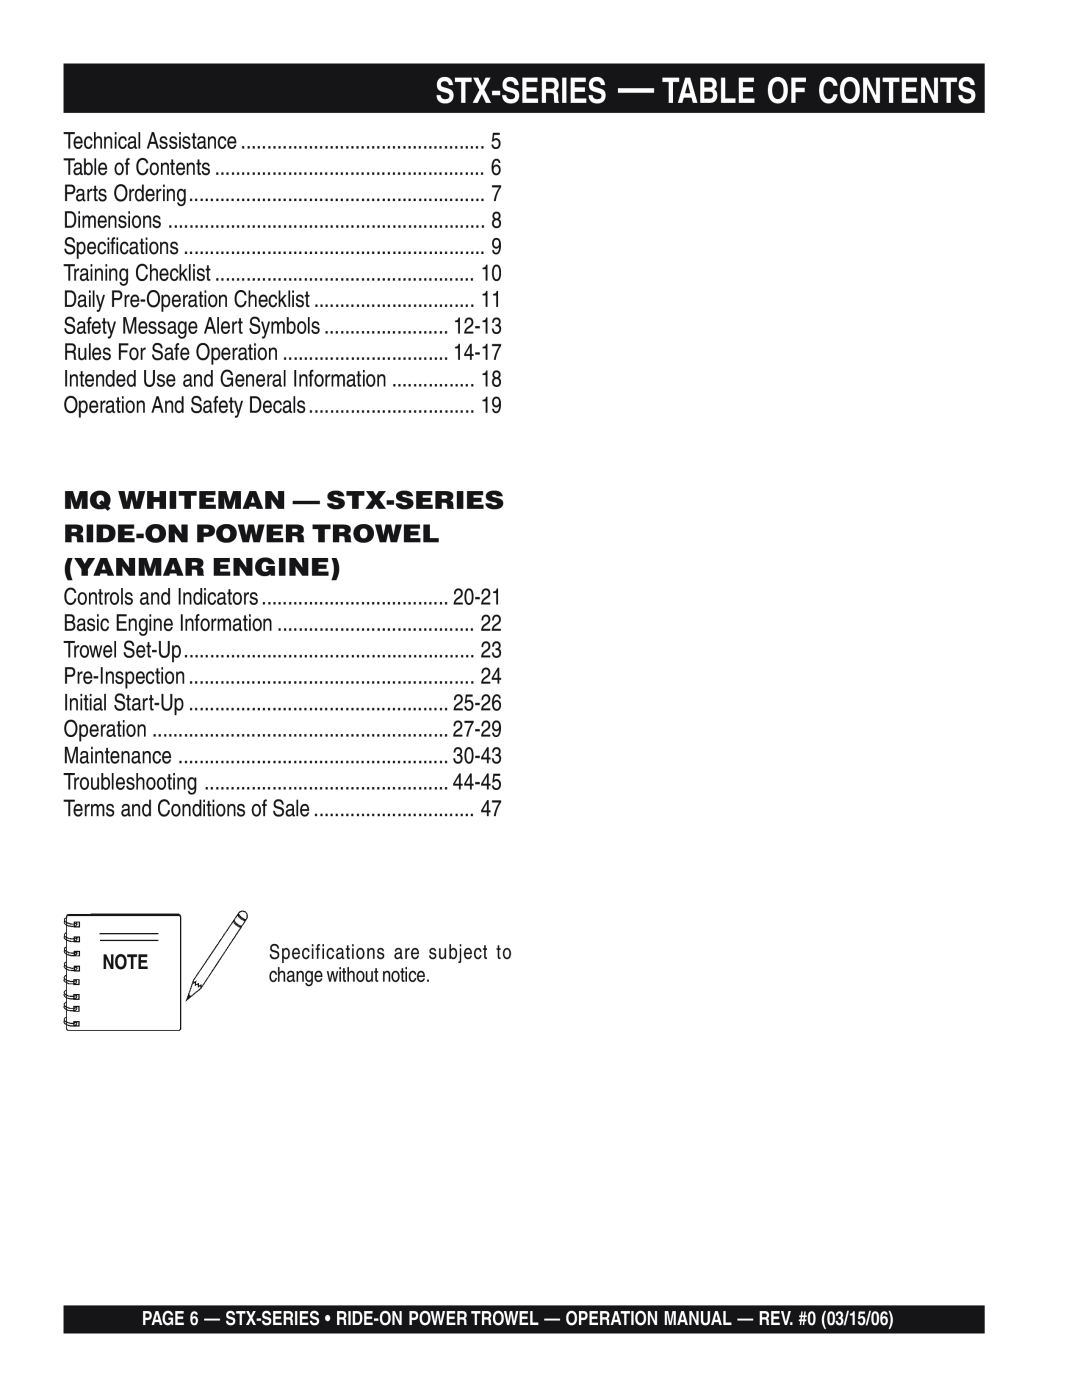 Multiquip STX55Y6 Mq Whiteman - Stx-Series Ride-Onpower Trowel, Yanmar Engine, Stx-Series - Table Of Contents 